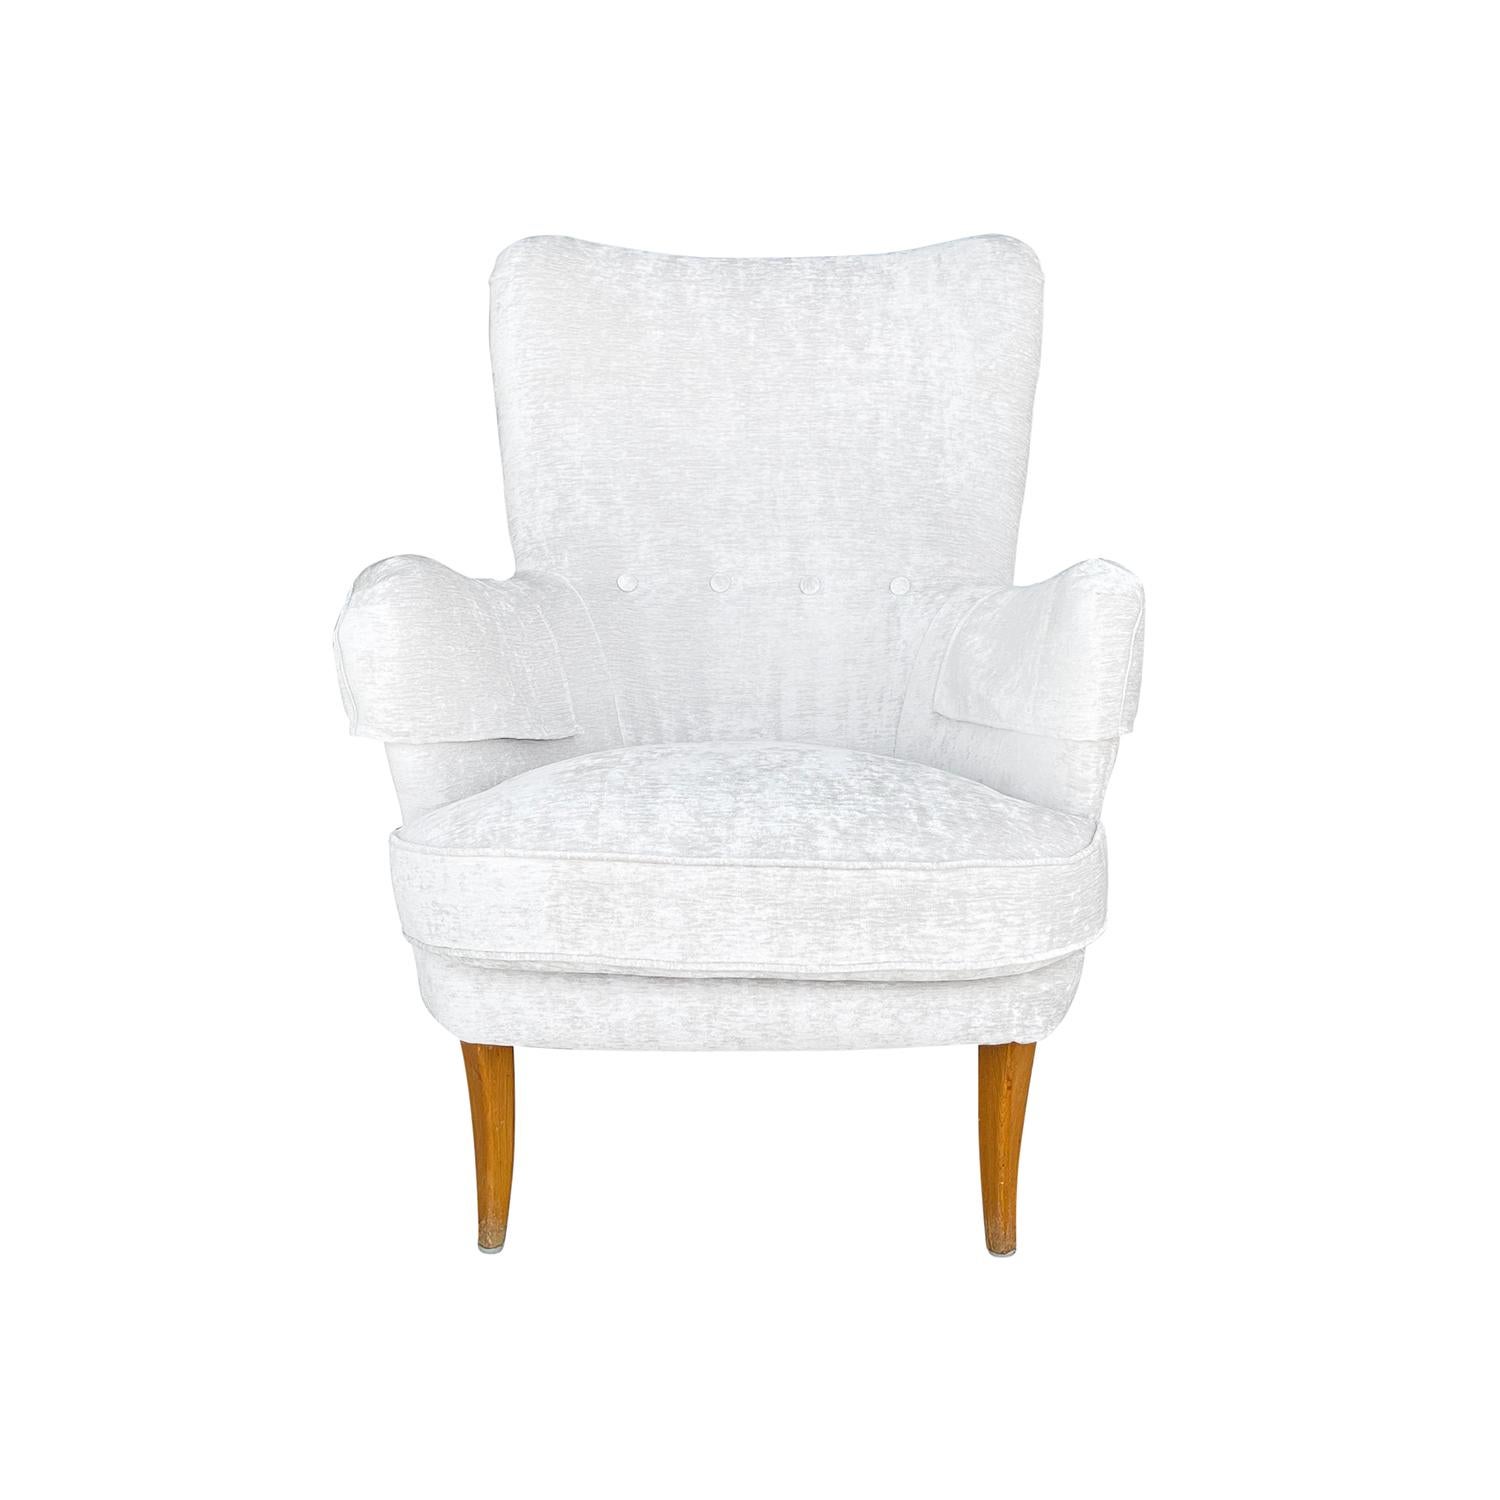 Un fauteuil anonyme suédois vintage blanc-gris, Mid-Century Modern, avec deux coussins, conçu par Carl Malmsten, en bon état. Le dossier de la chaise d'appoint scandinave Little Furulid est légèrement incurvé, avec des bras tendus, et repose sur